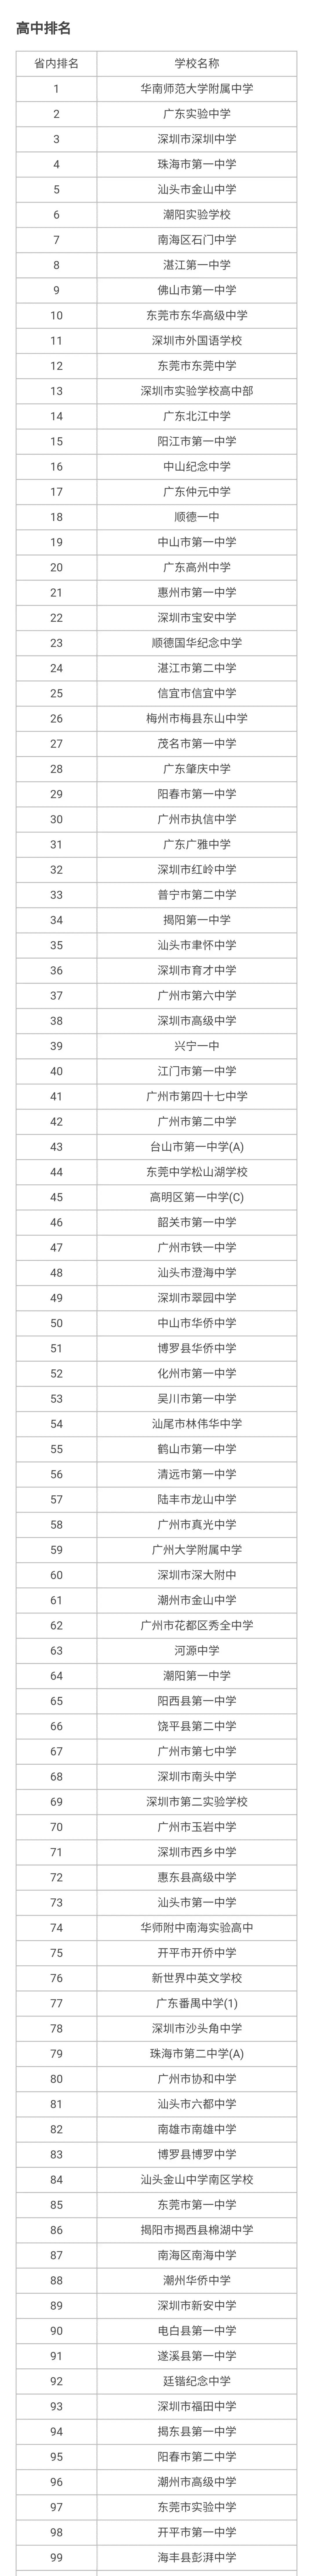 最新广东省高中排名!深圳中学只排第三 第一名,华南师范大学附属中学